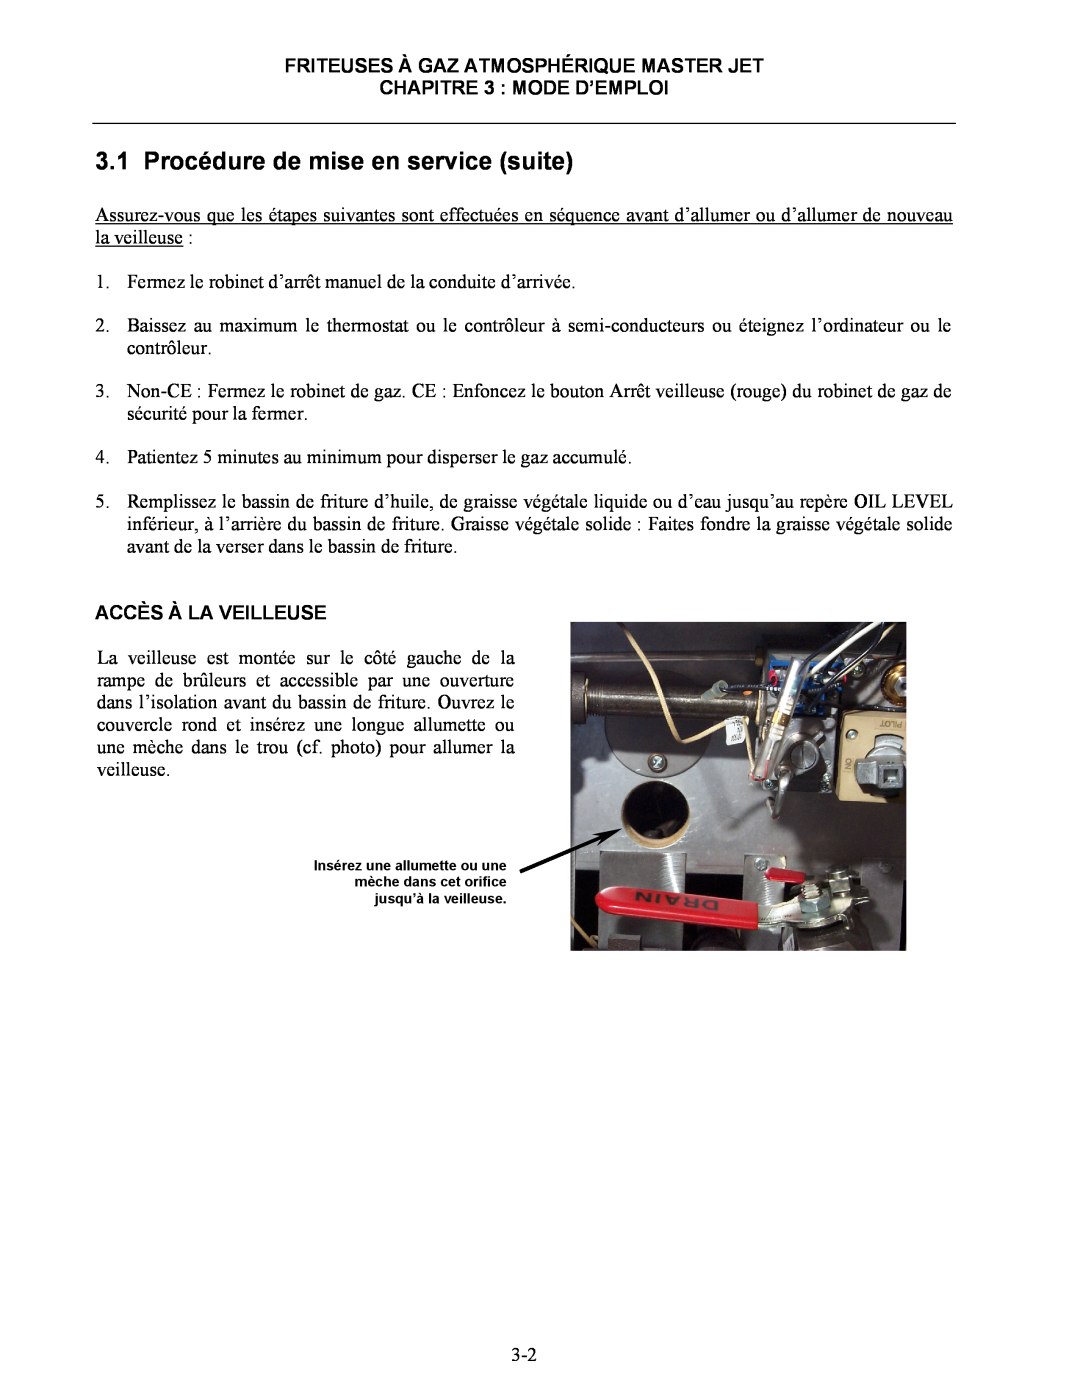 Frymaster CF manual Procédure de mise en service suite, FRITEUSES À GAZ ATMOSPHÉRIQUE MASTER JET CHAPITRE 3 MODE D’EMPLOI 